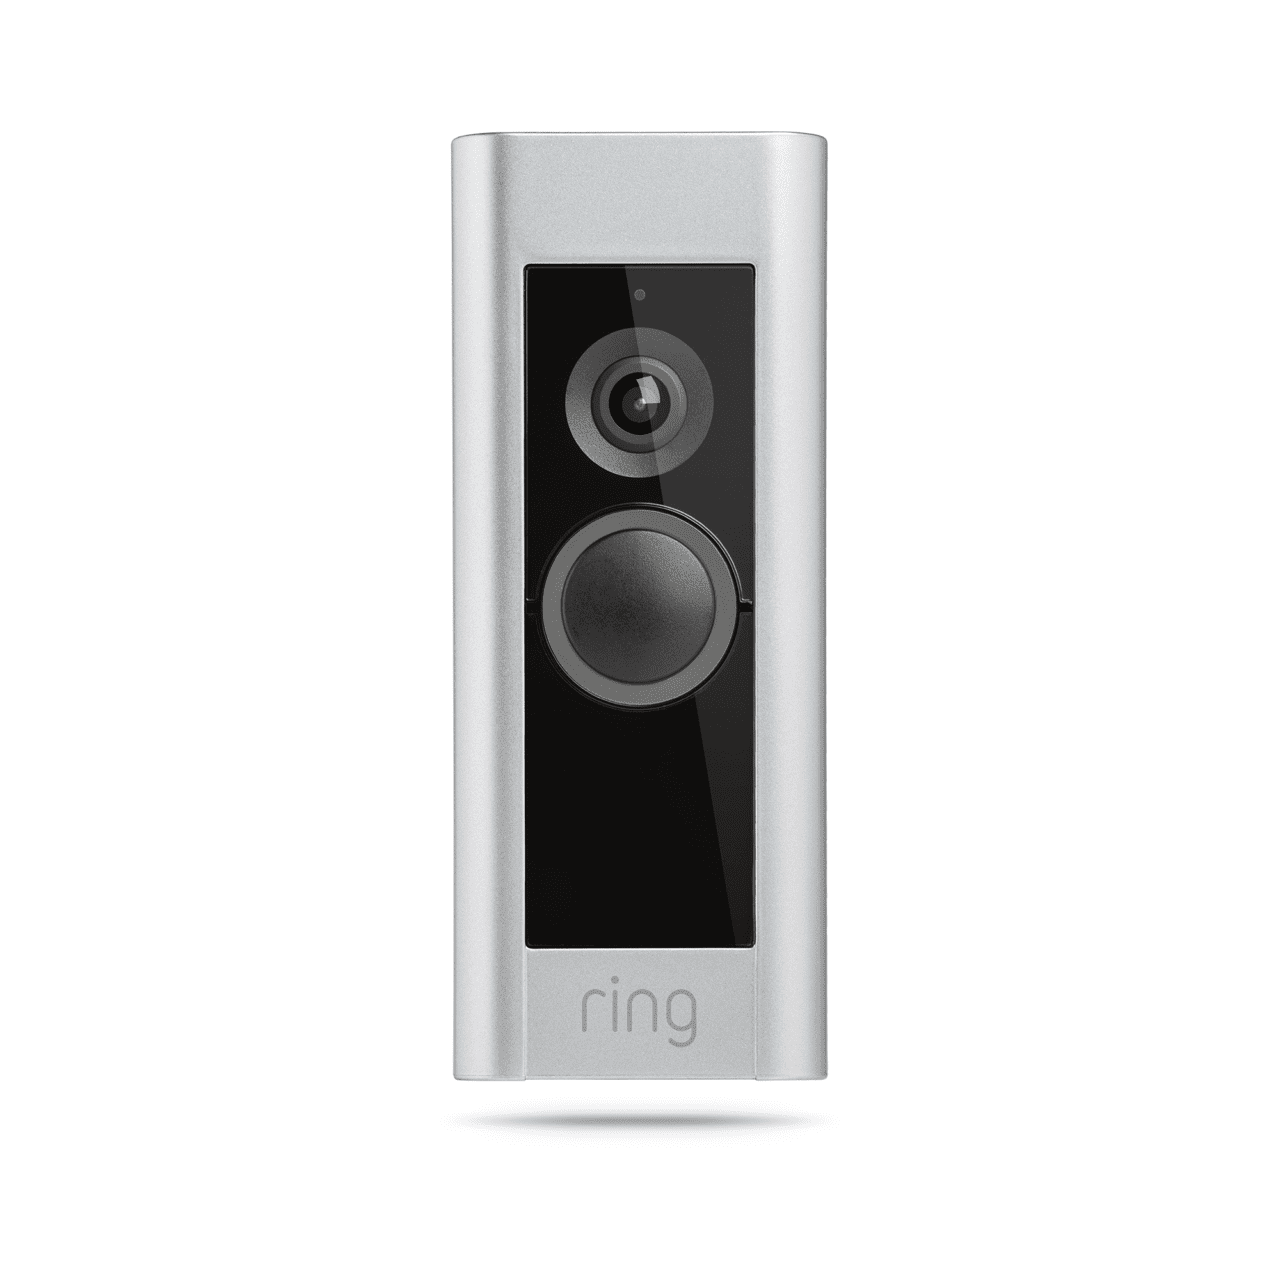 ring doorbell pro spec sheet